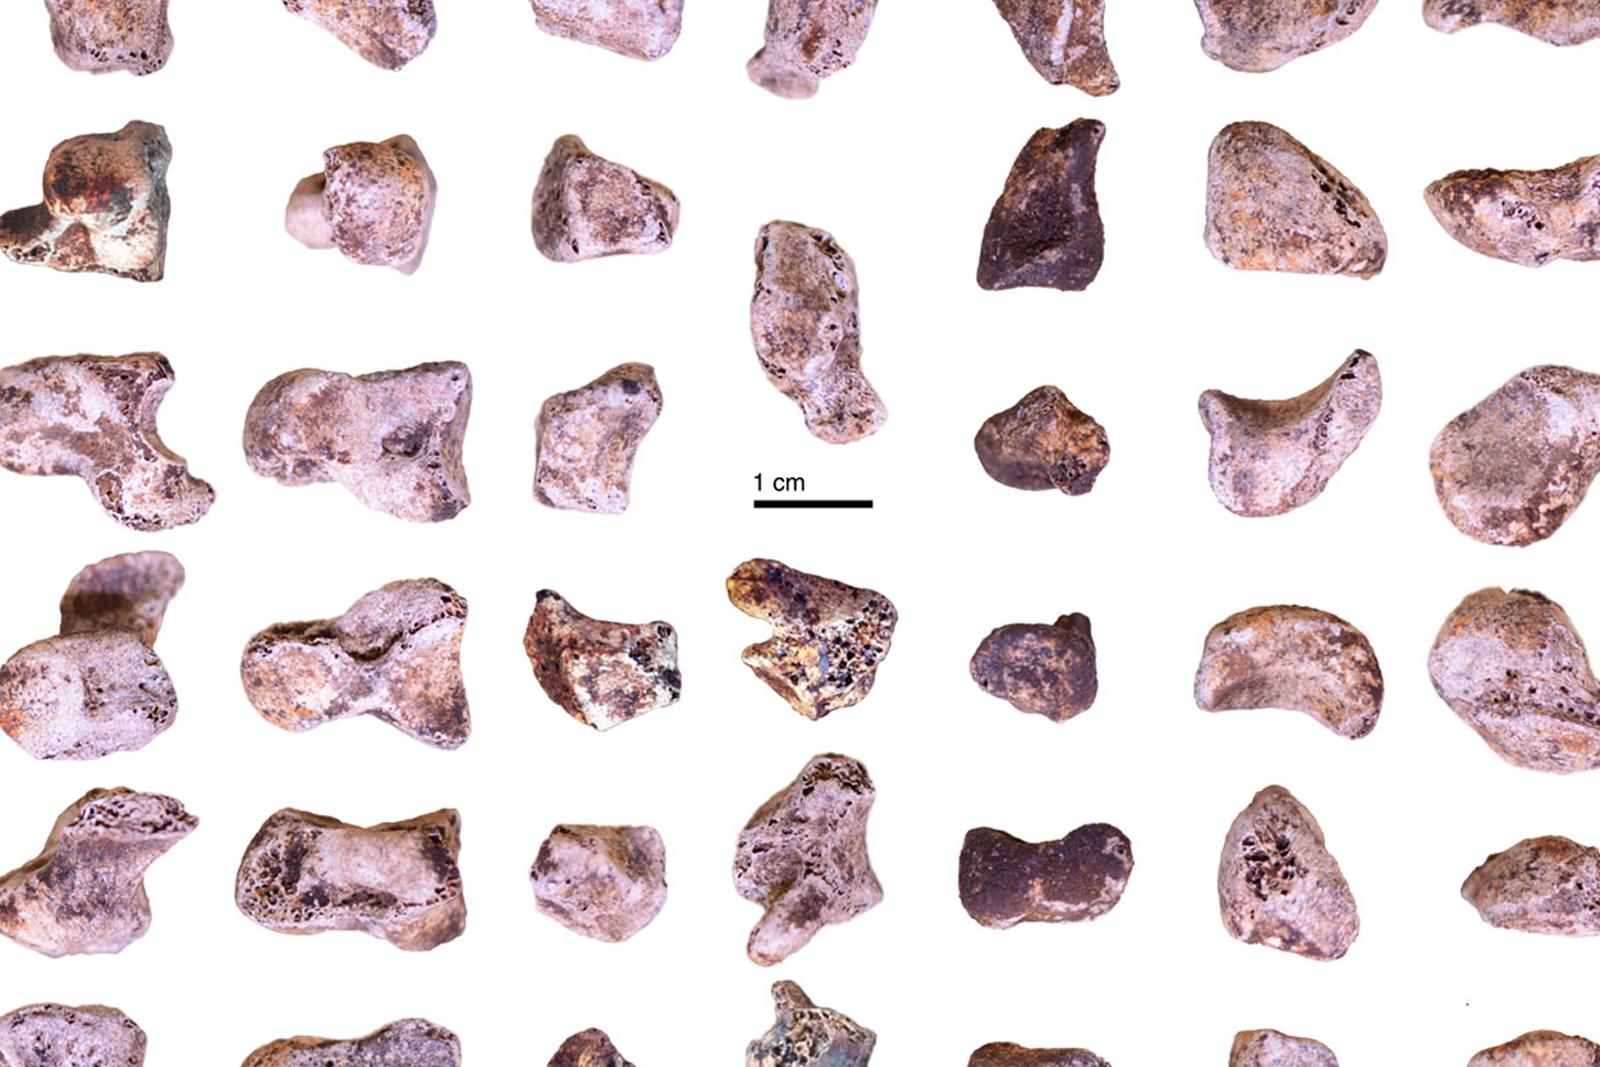 Frammenti delle ossa della mano di Homo naledi